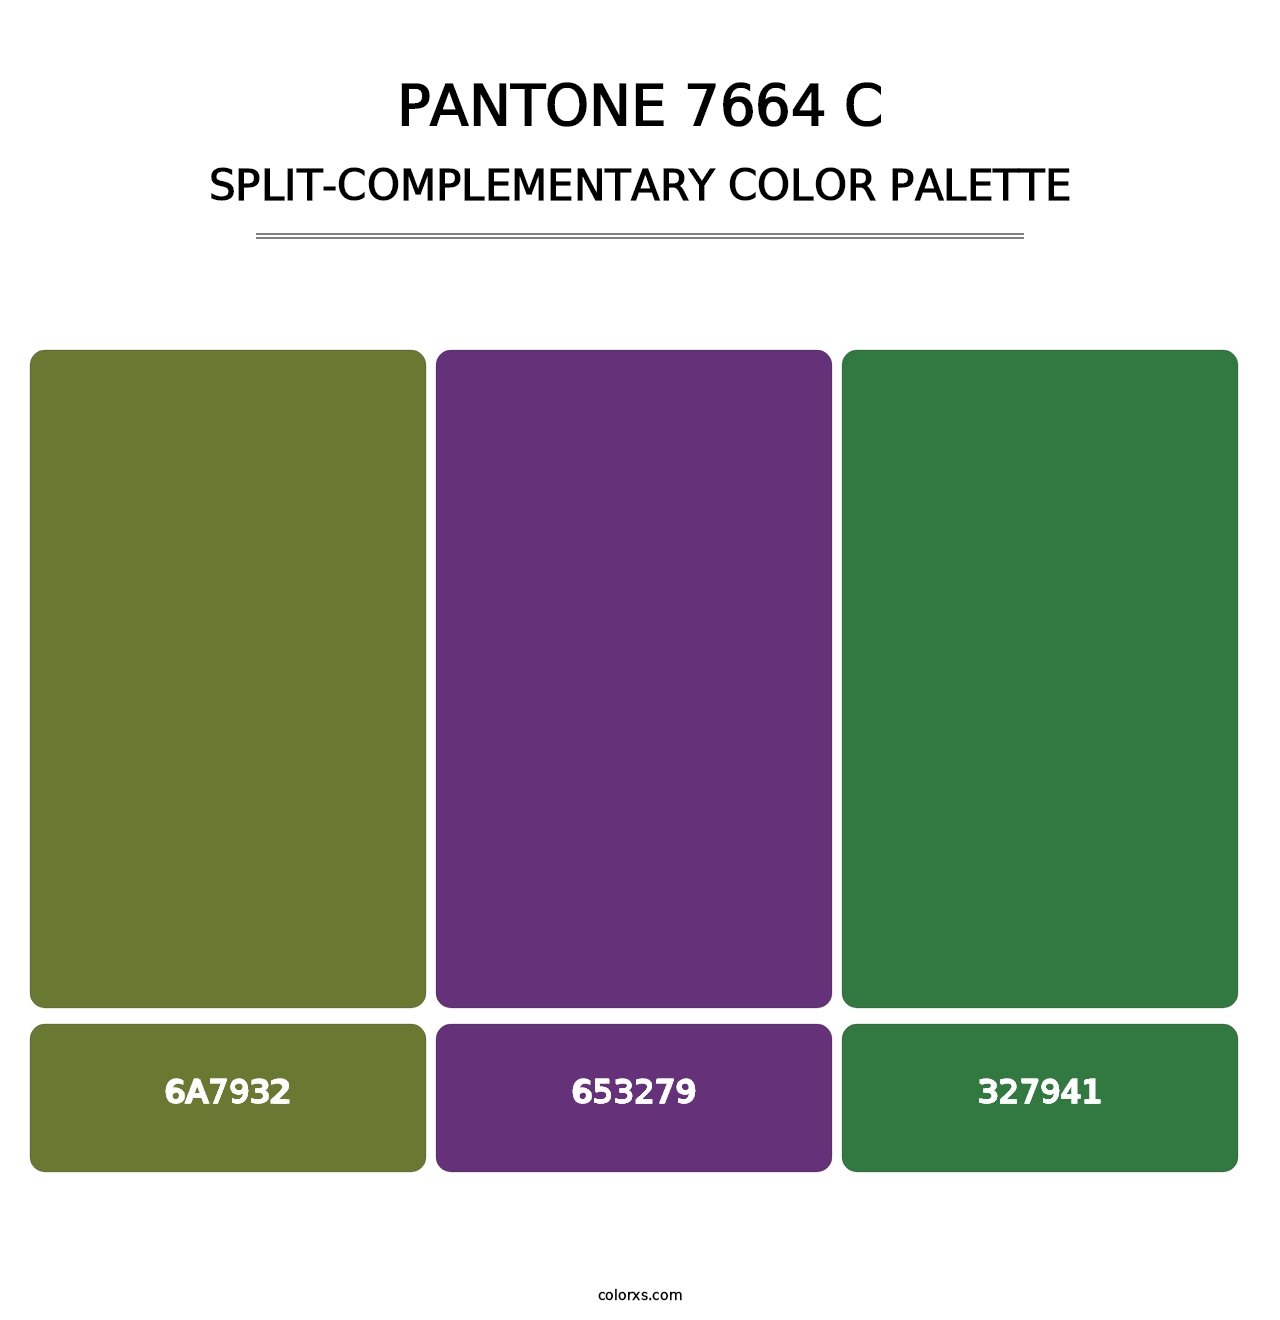 PANTONE 7664 C - Split-Complementary Color Palette